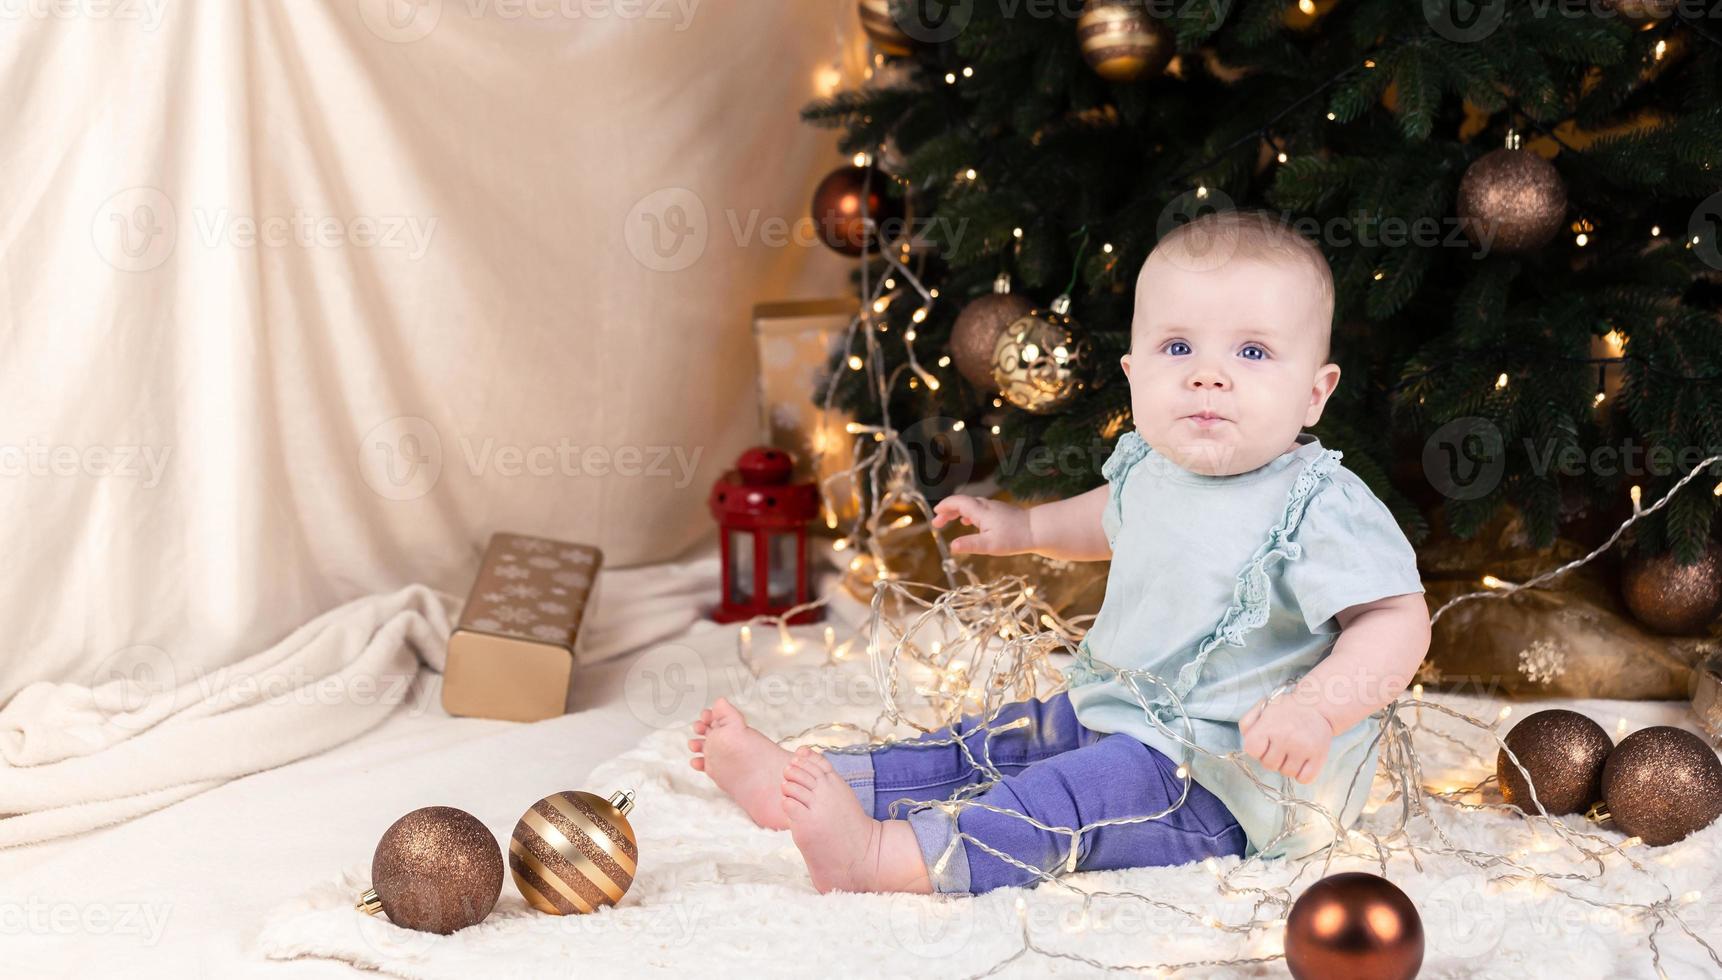 un bébé en jean est assis près d'un arbre de Noël et joue avec une guirlande dans laquelle il est empêtré photo